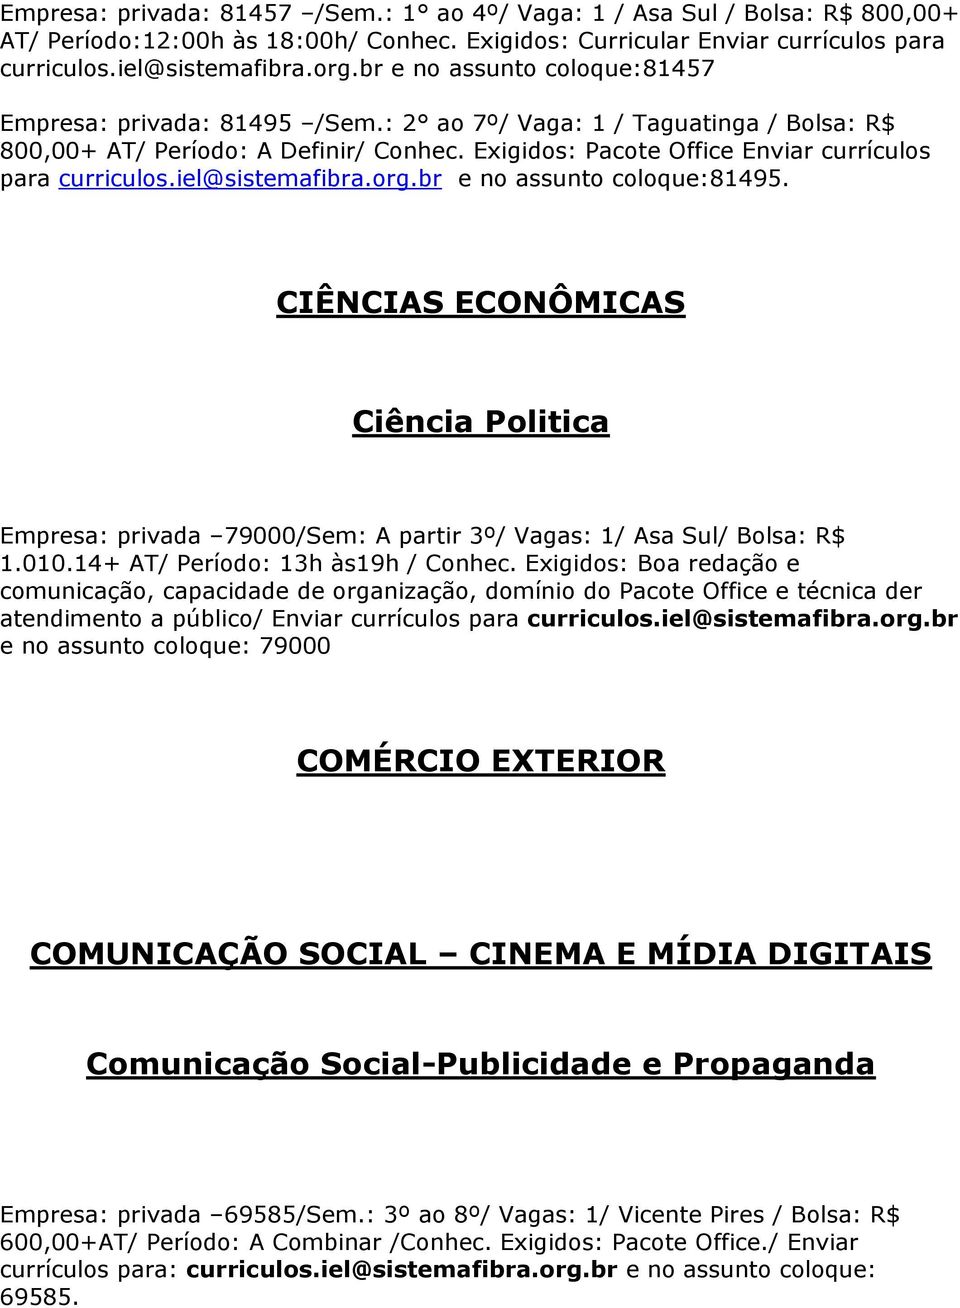 Exigidos: Pacote Office Enviar currículos para curriculos.iel@sistemafibra.org.br e no assunto coloque:81495.